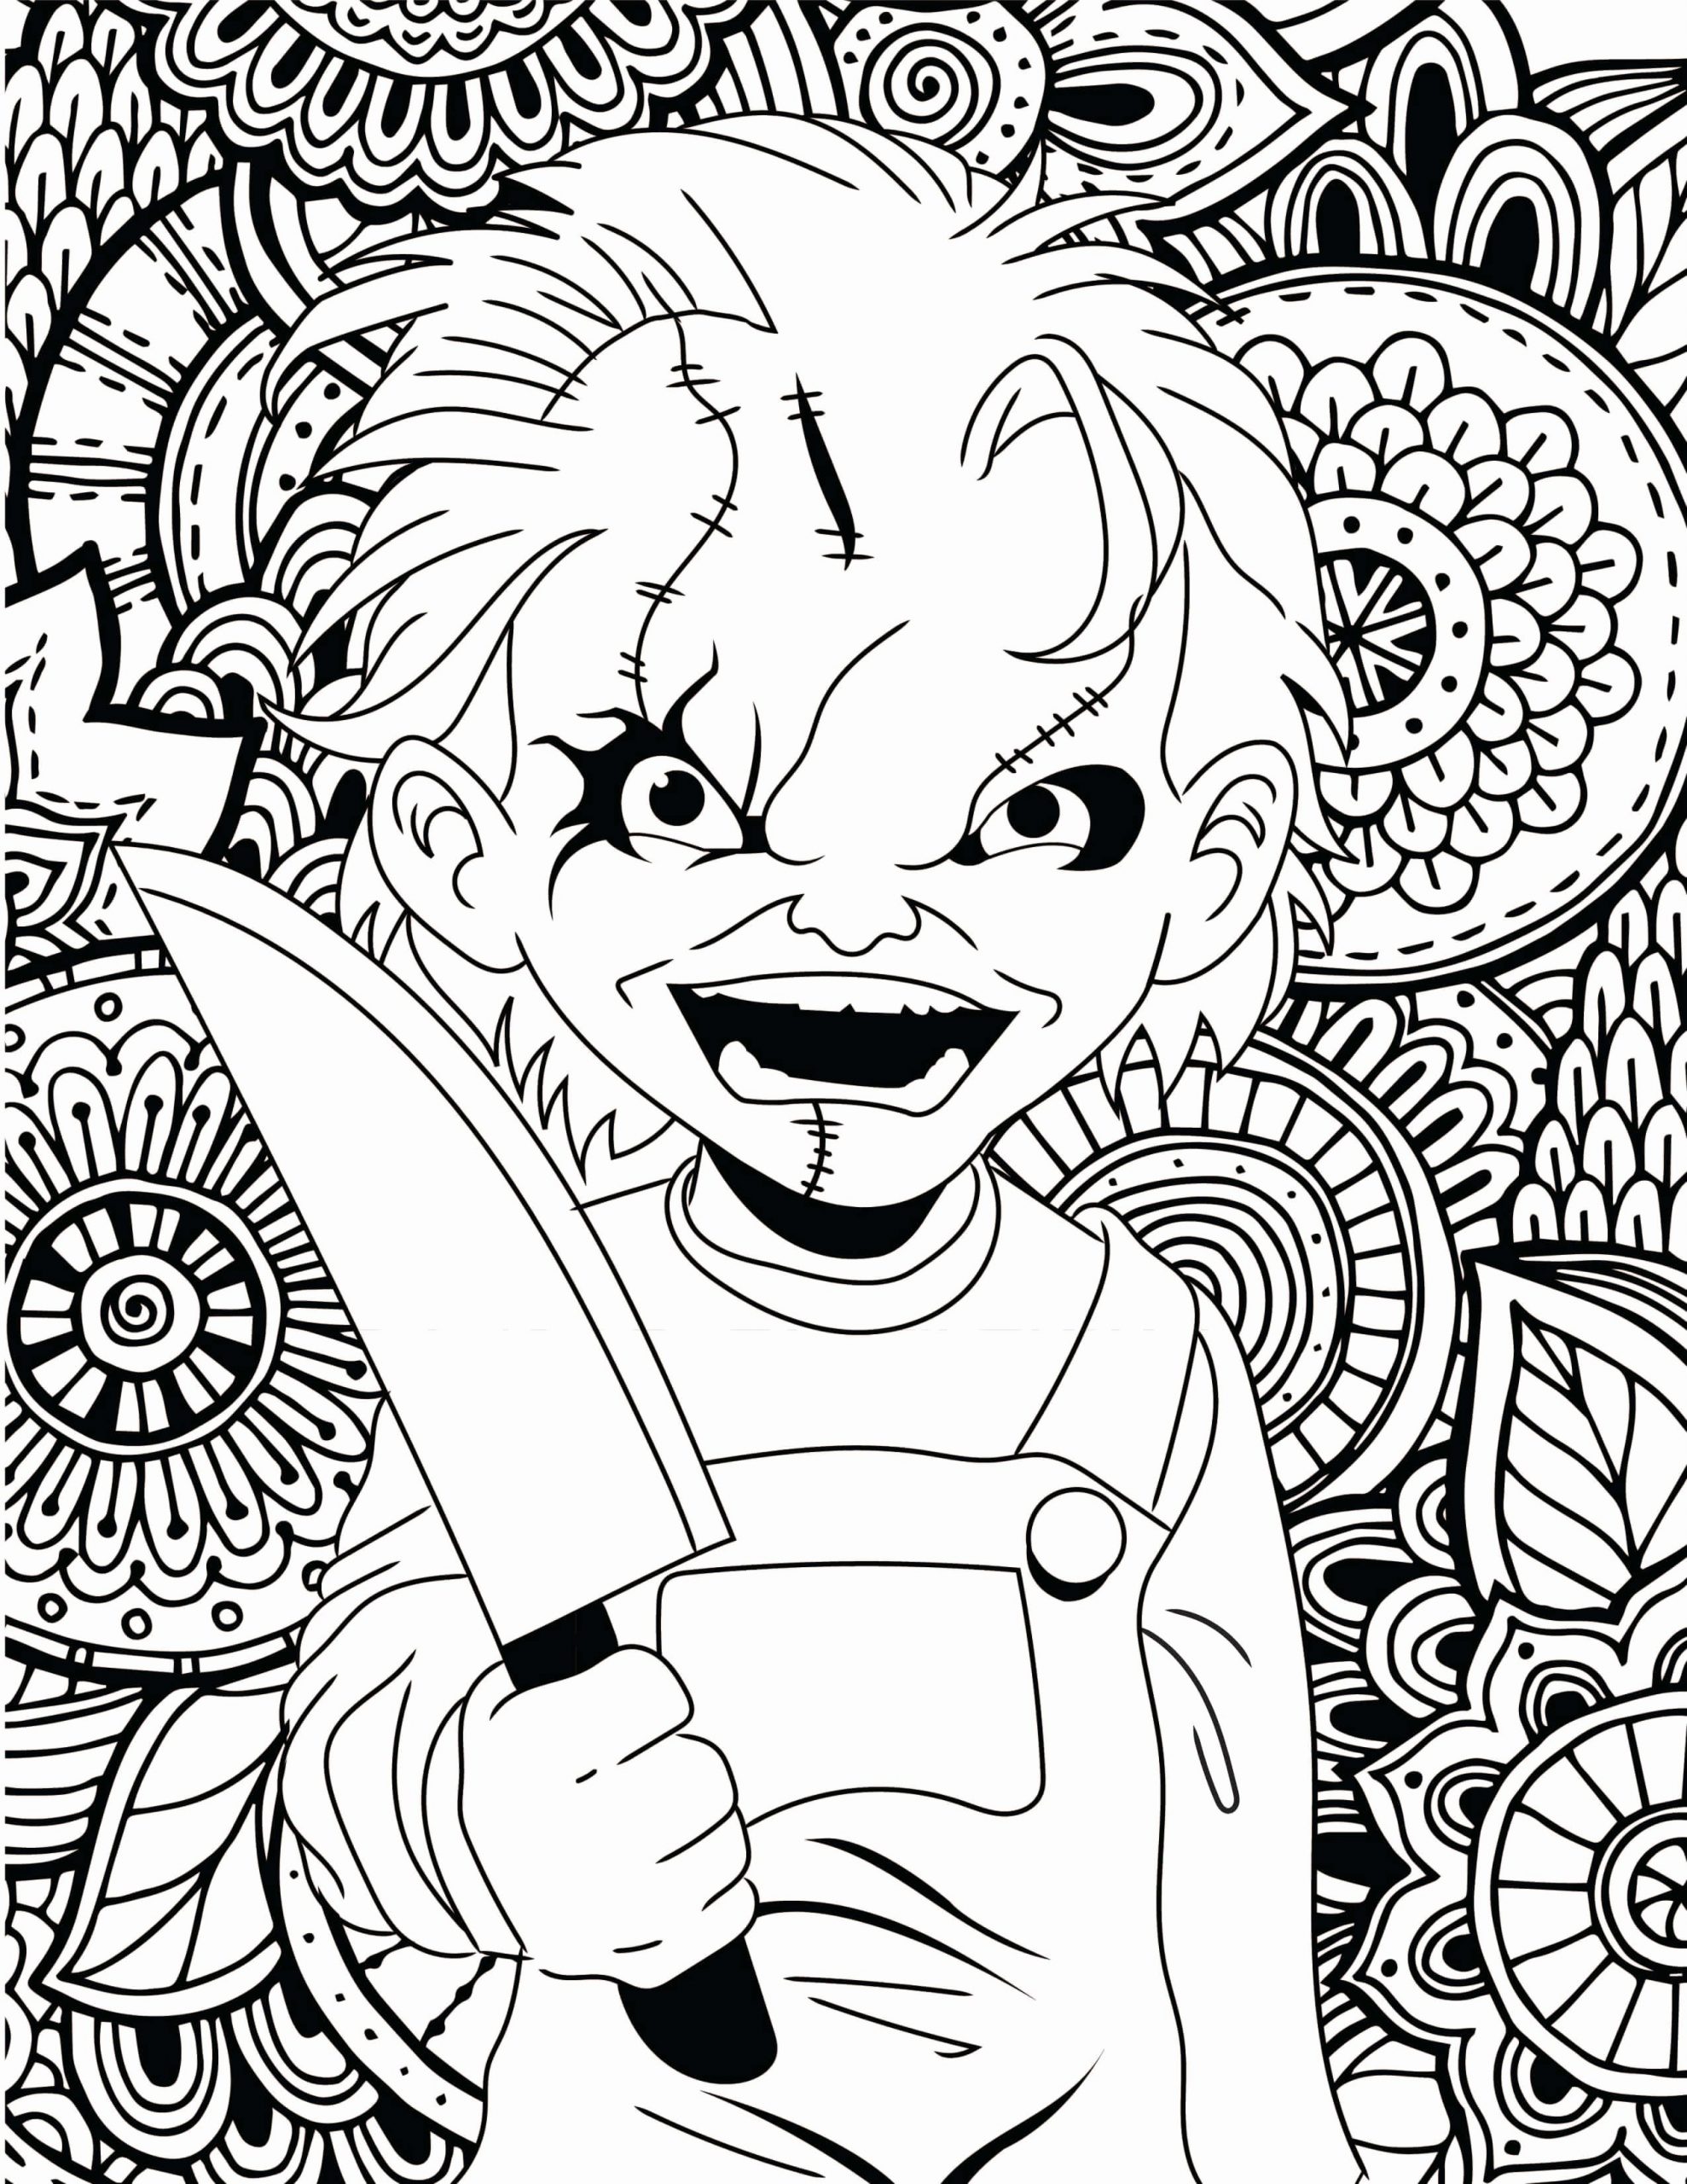 Dibujos de Chucky Malvada para colorear